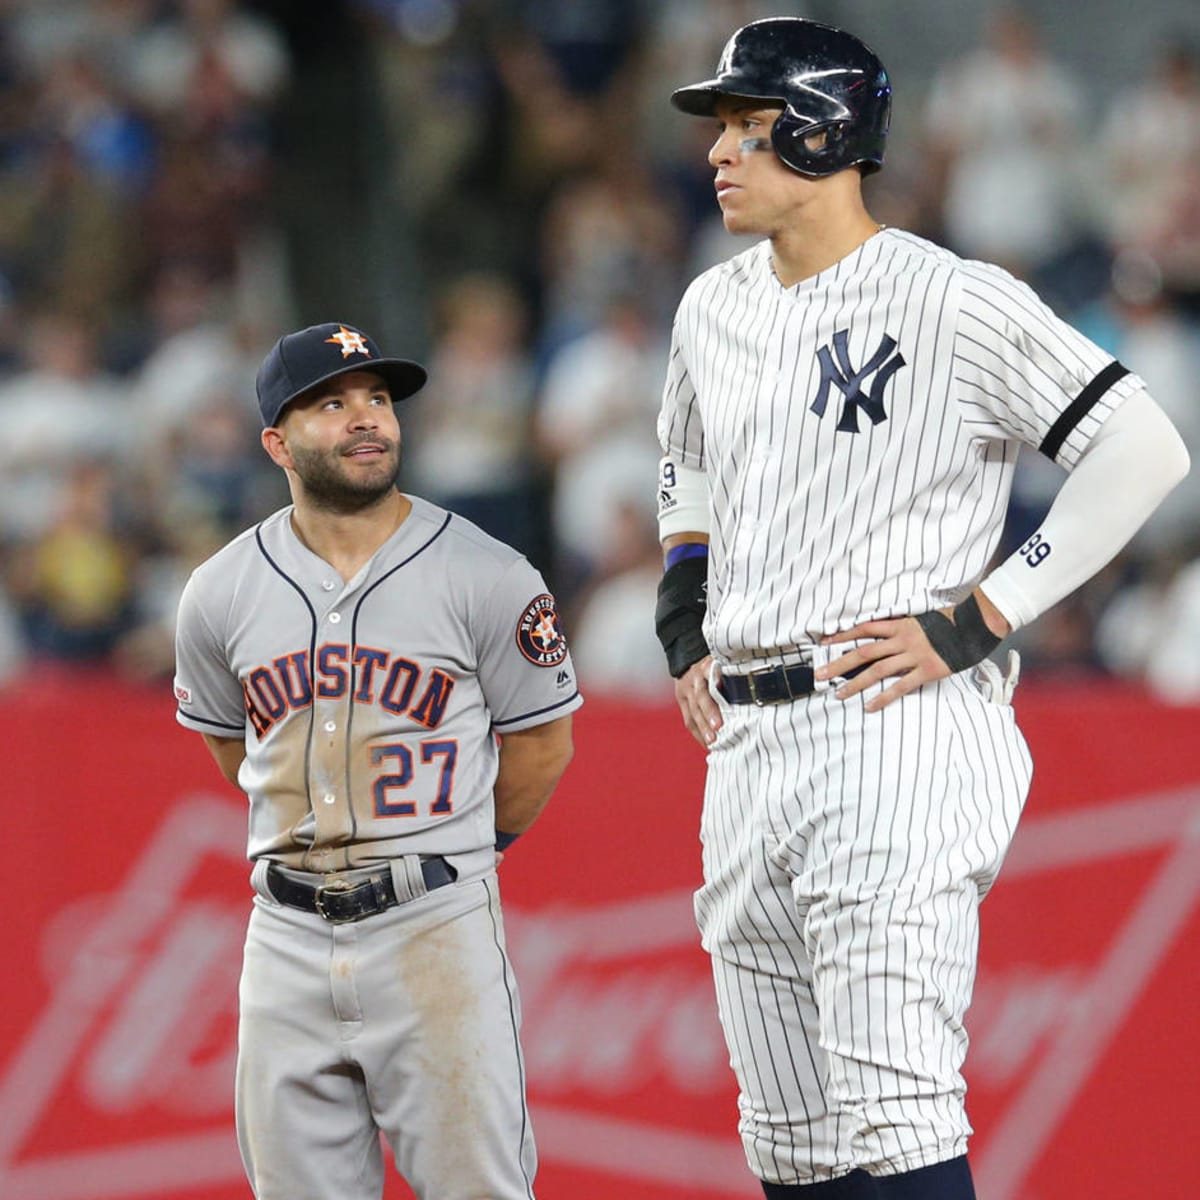 Yankees' Aaron Judge mocks Astros' Jose Altuve, then denies it